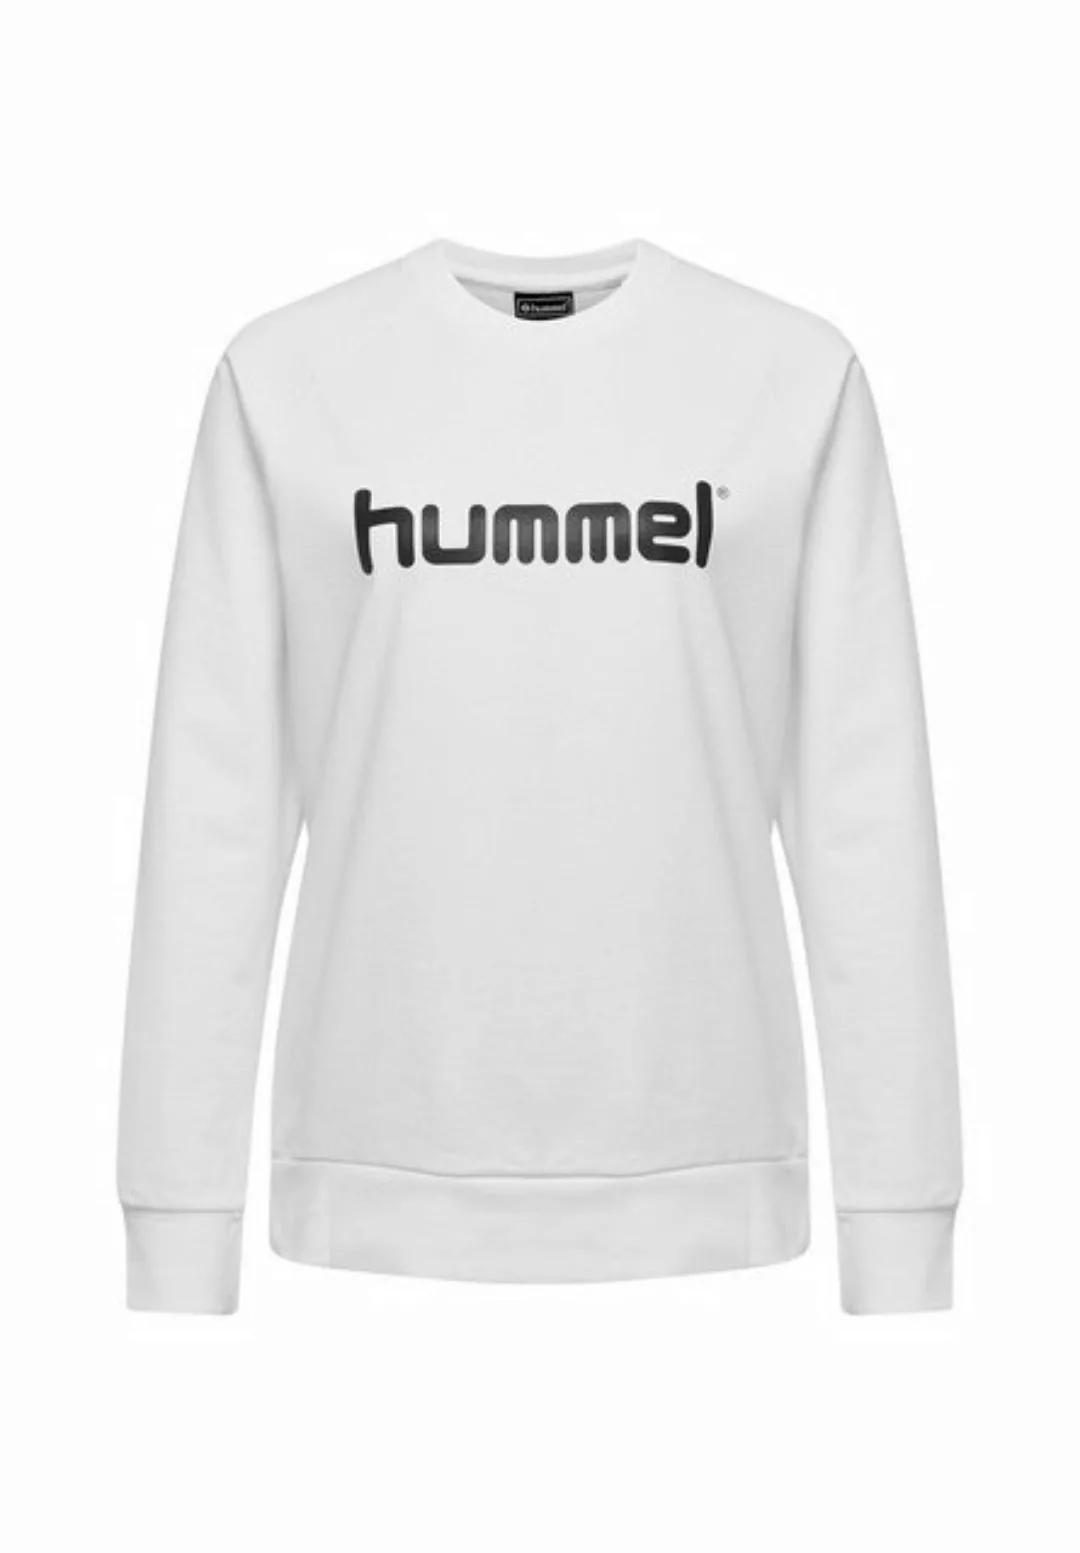 hummel Trainingspullover Sweatshirt Training Langarm Top Sport 7242 in Weiß günstig online kaufen